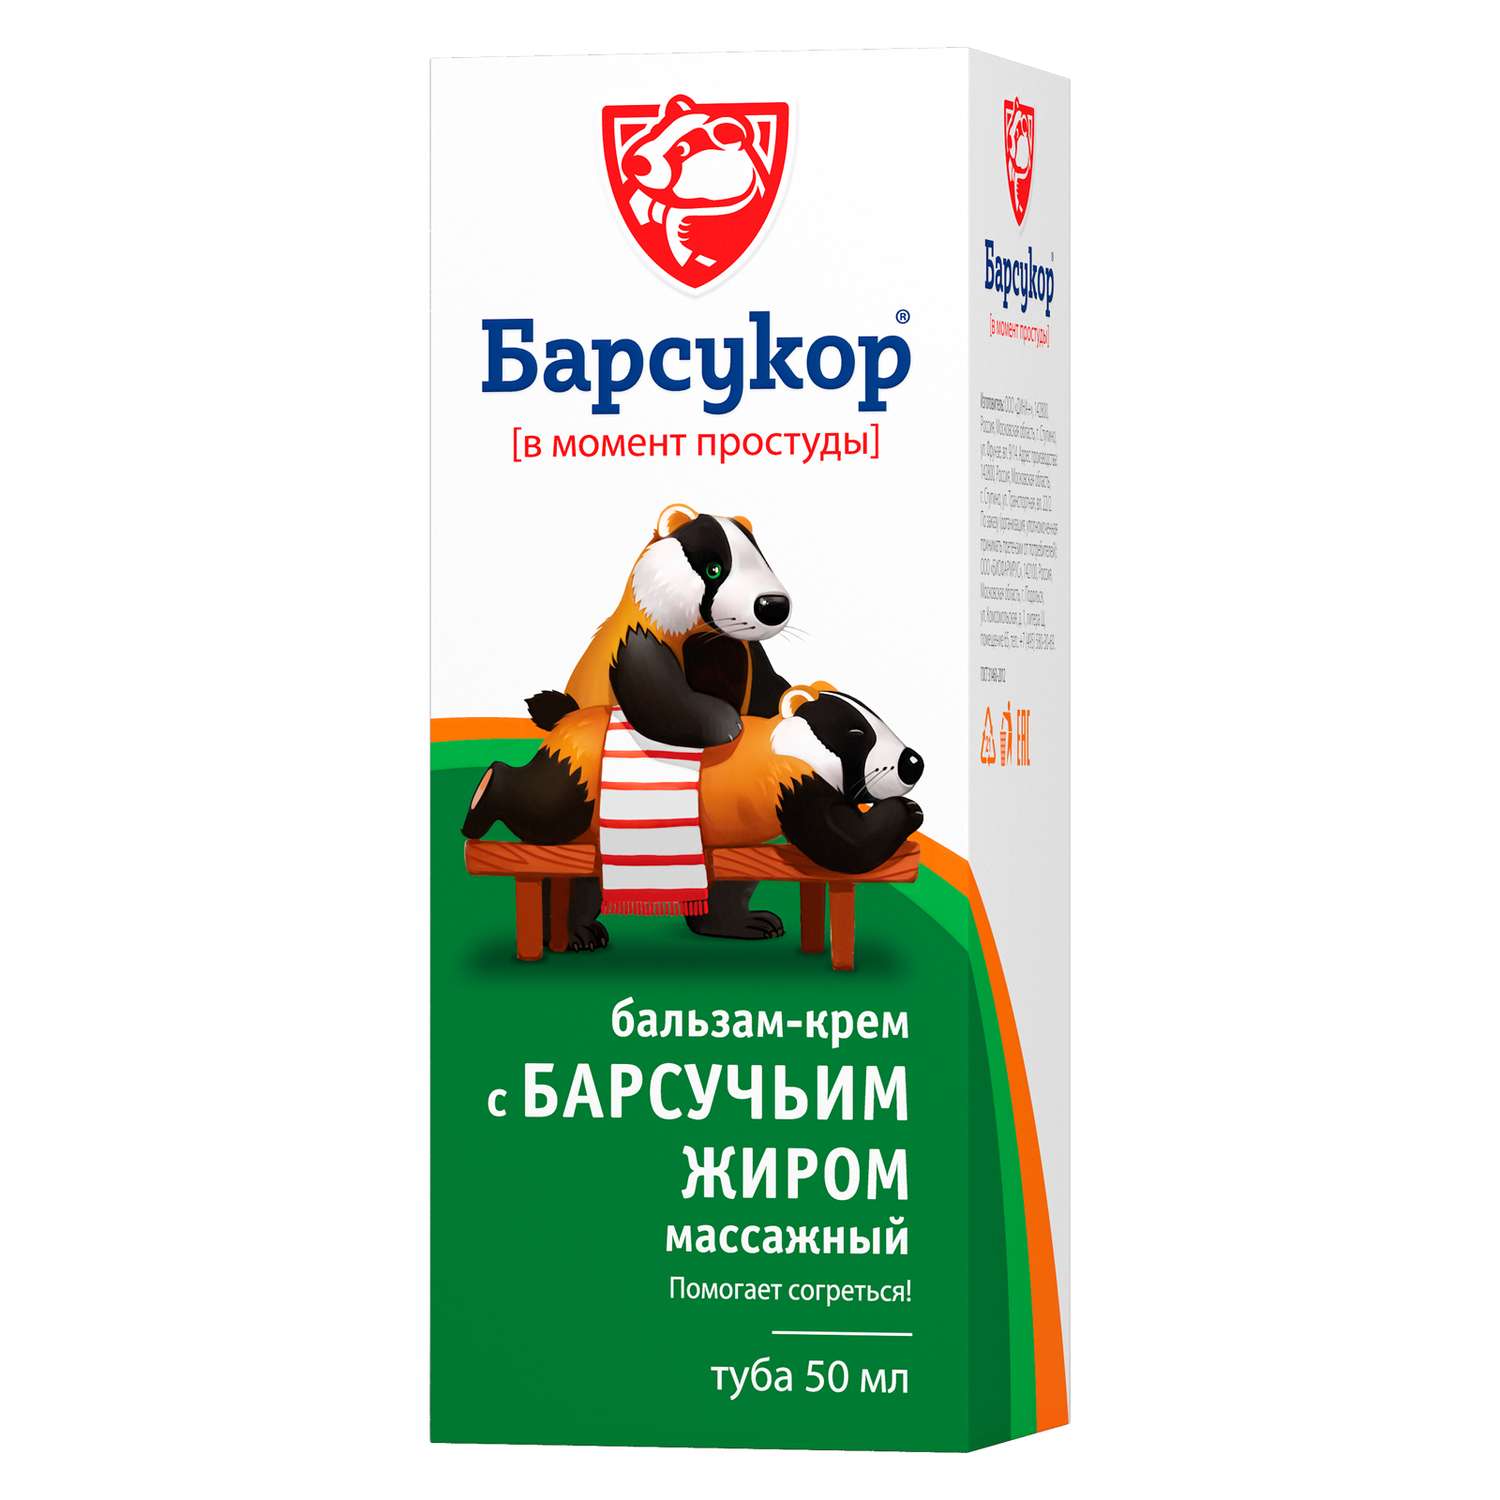 Крем-бальзам Барсукор массажный с барсучьим жиром 50 мл - фото 3